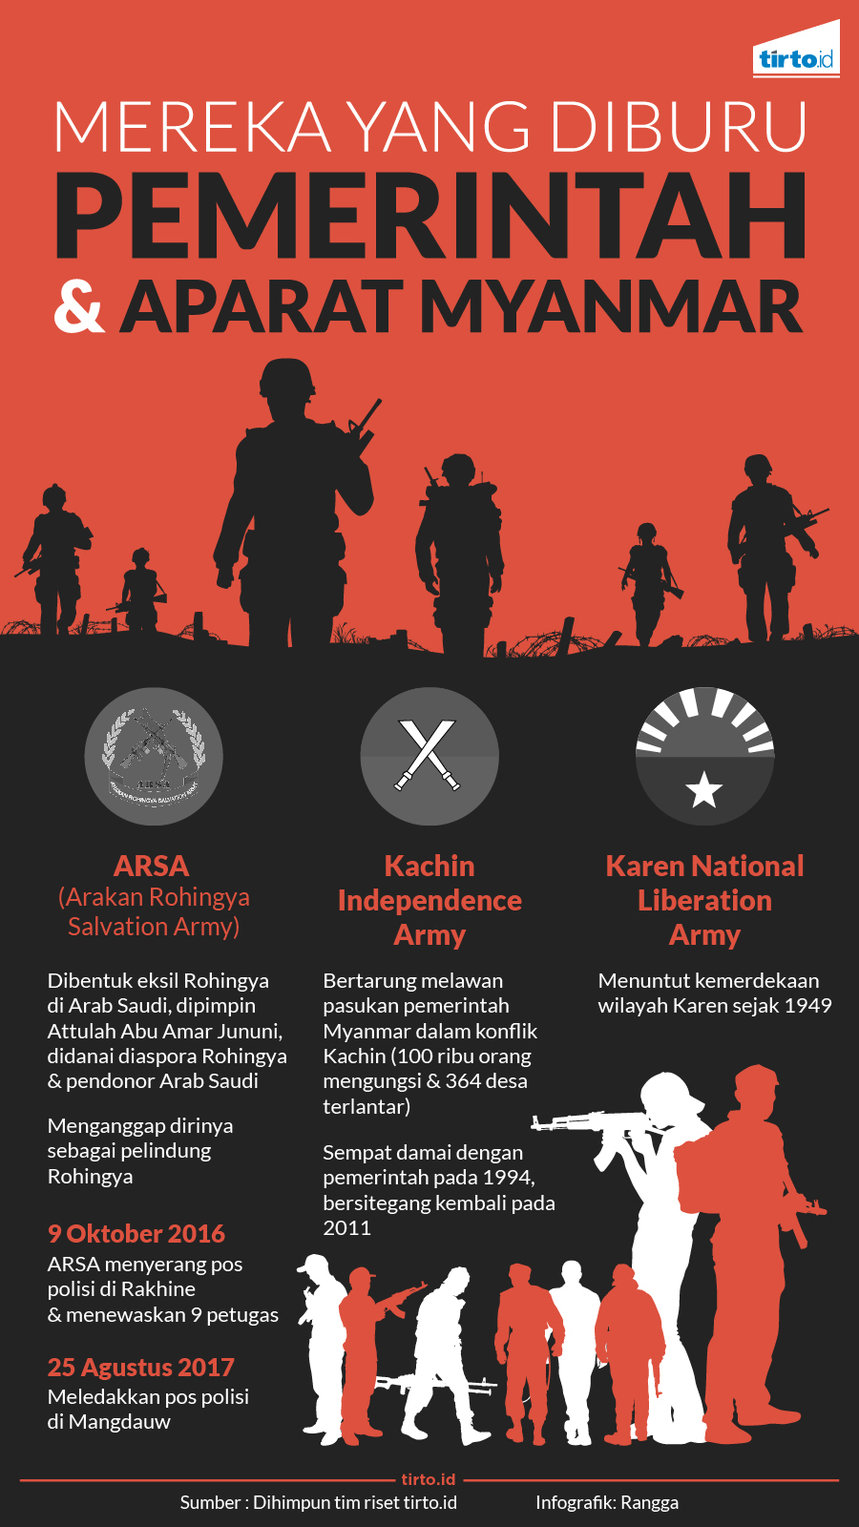 infografik mereka yang diburu pemerintah aparat myanmar